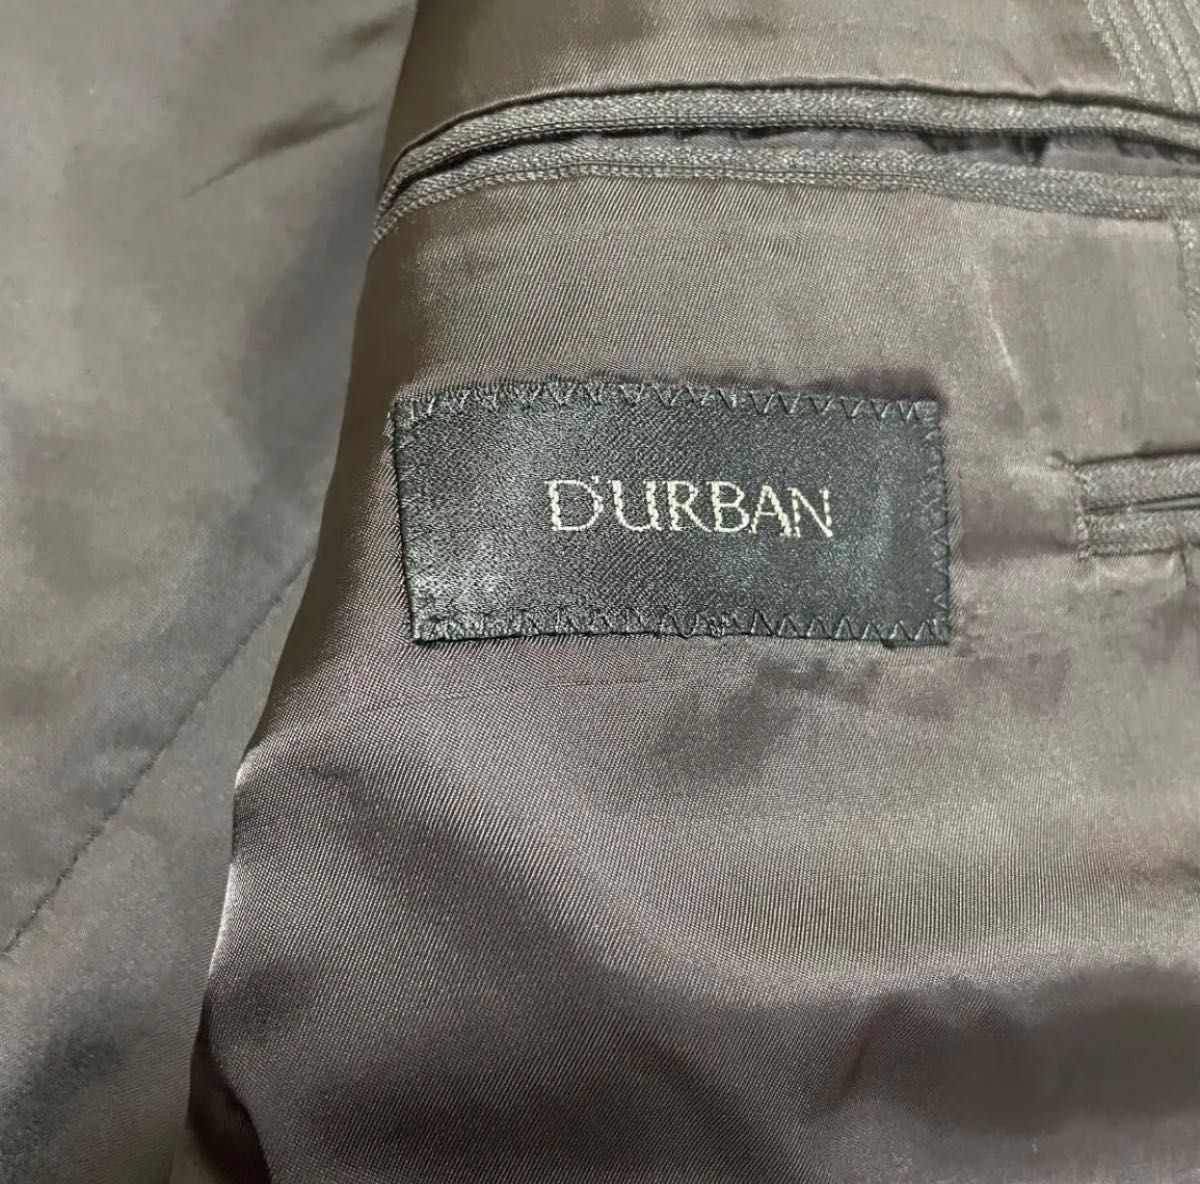 D'URBAN ダーバン セットアップ ブラウン フォーマル スーツ ウール100